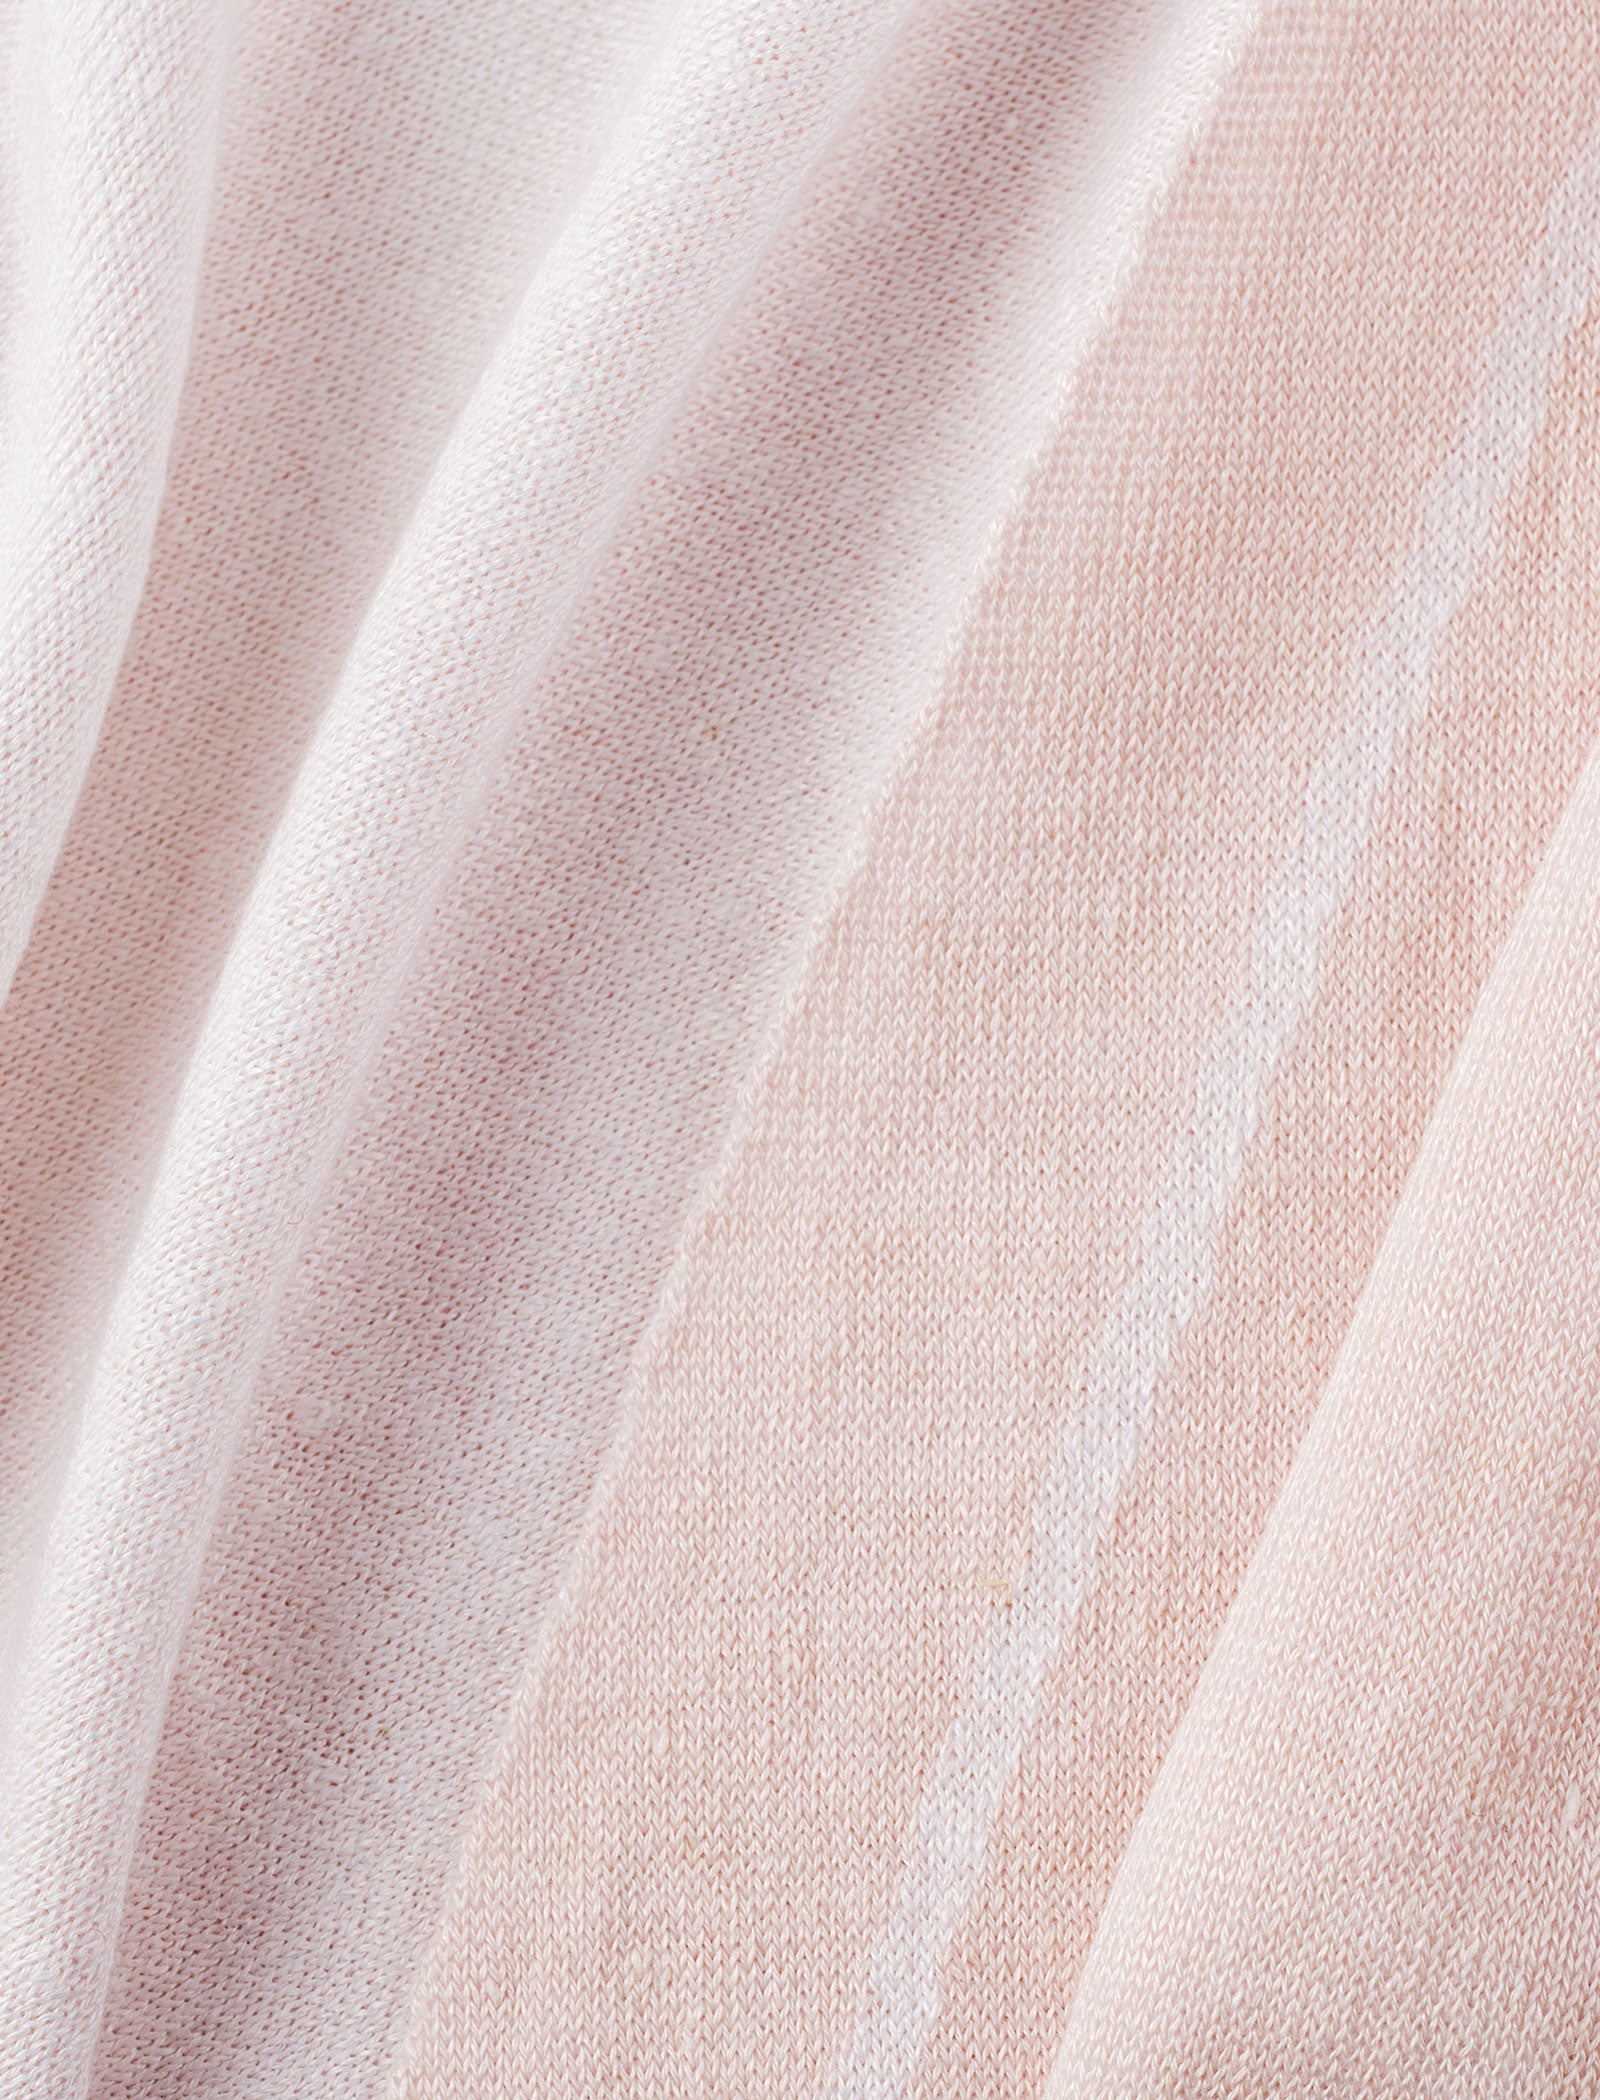 Kimono Jacket 100% Capri pink and white linen jacket detail